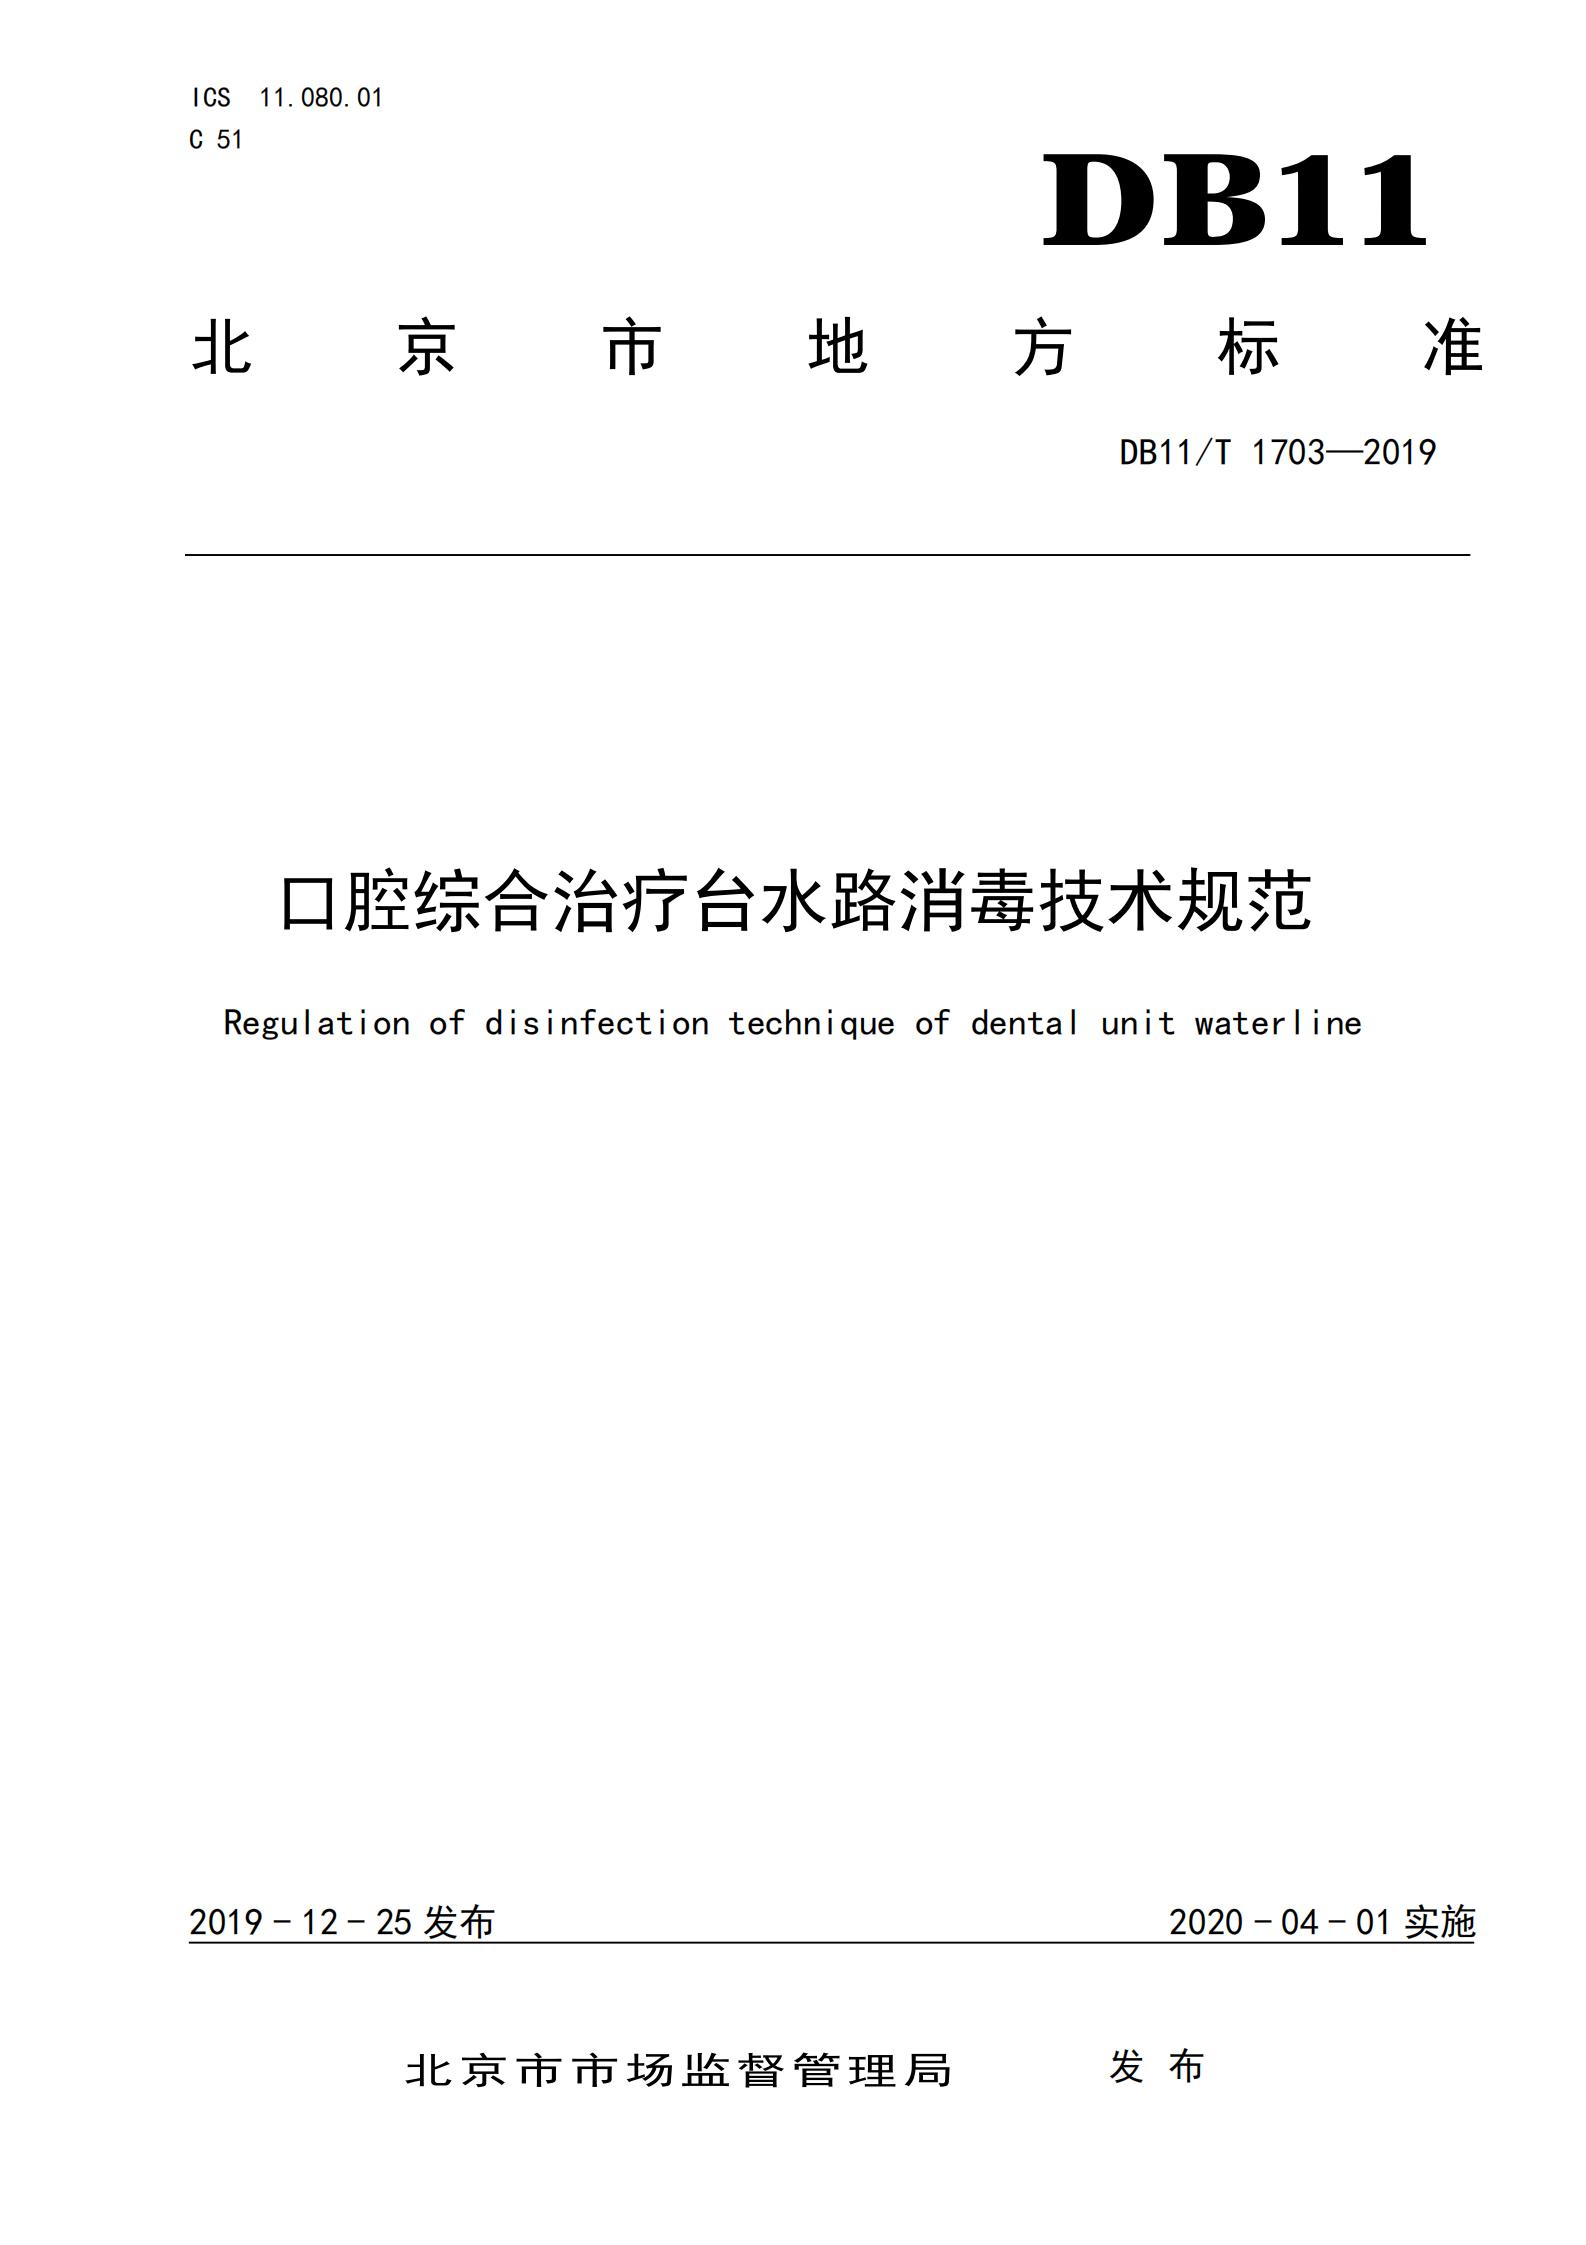 （北京市地标）口腔综合治疗台水路消毒技术规范DB11